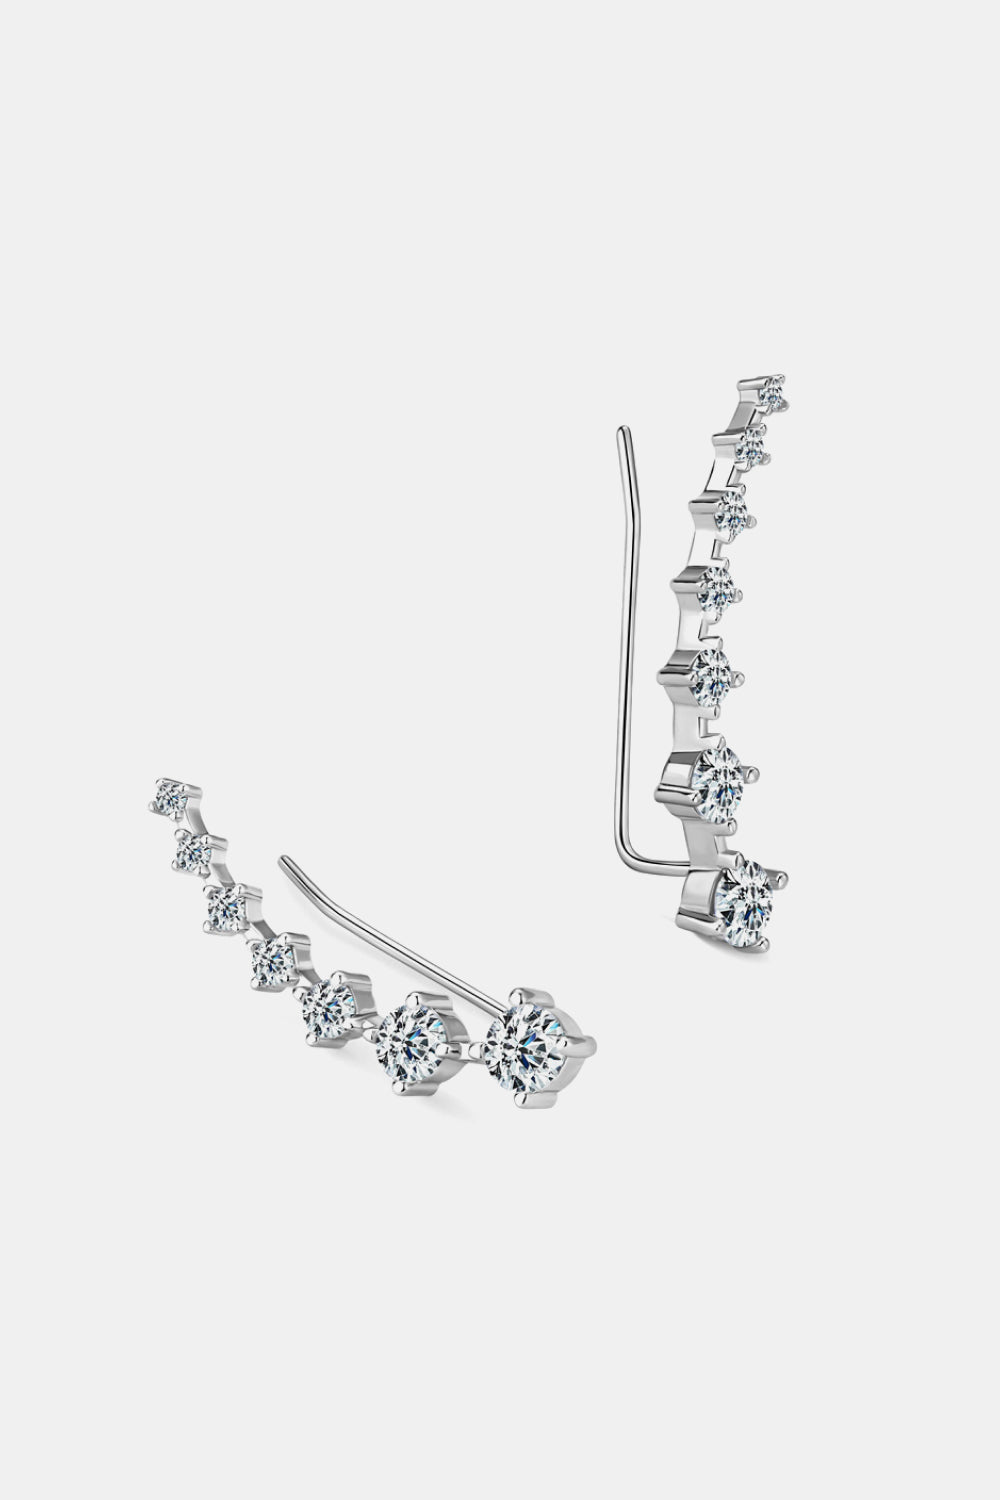 1.9 Carat Moissanite 925 Sterling Silver Earrings-Ever Joy